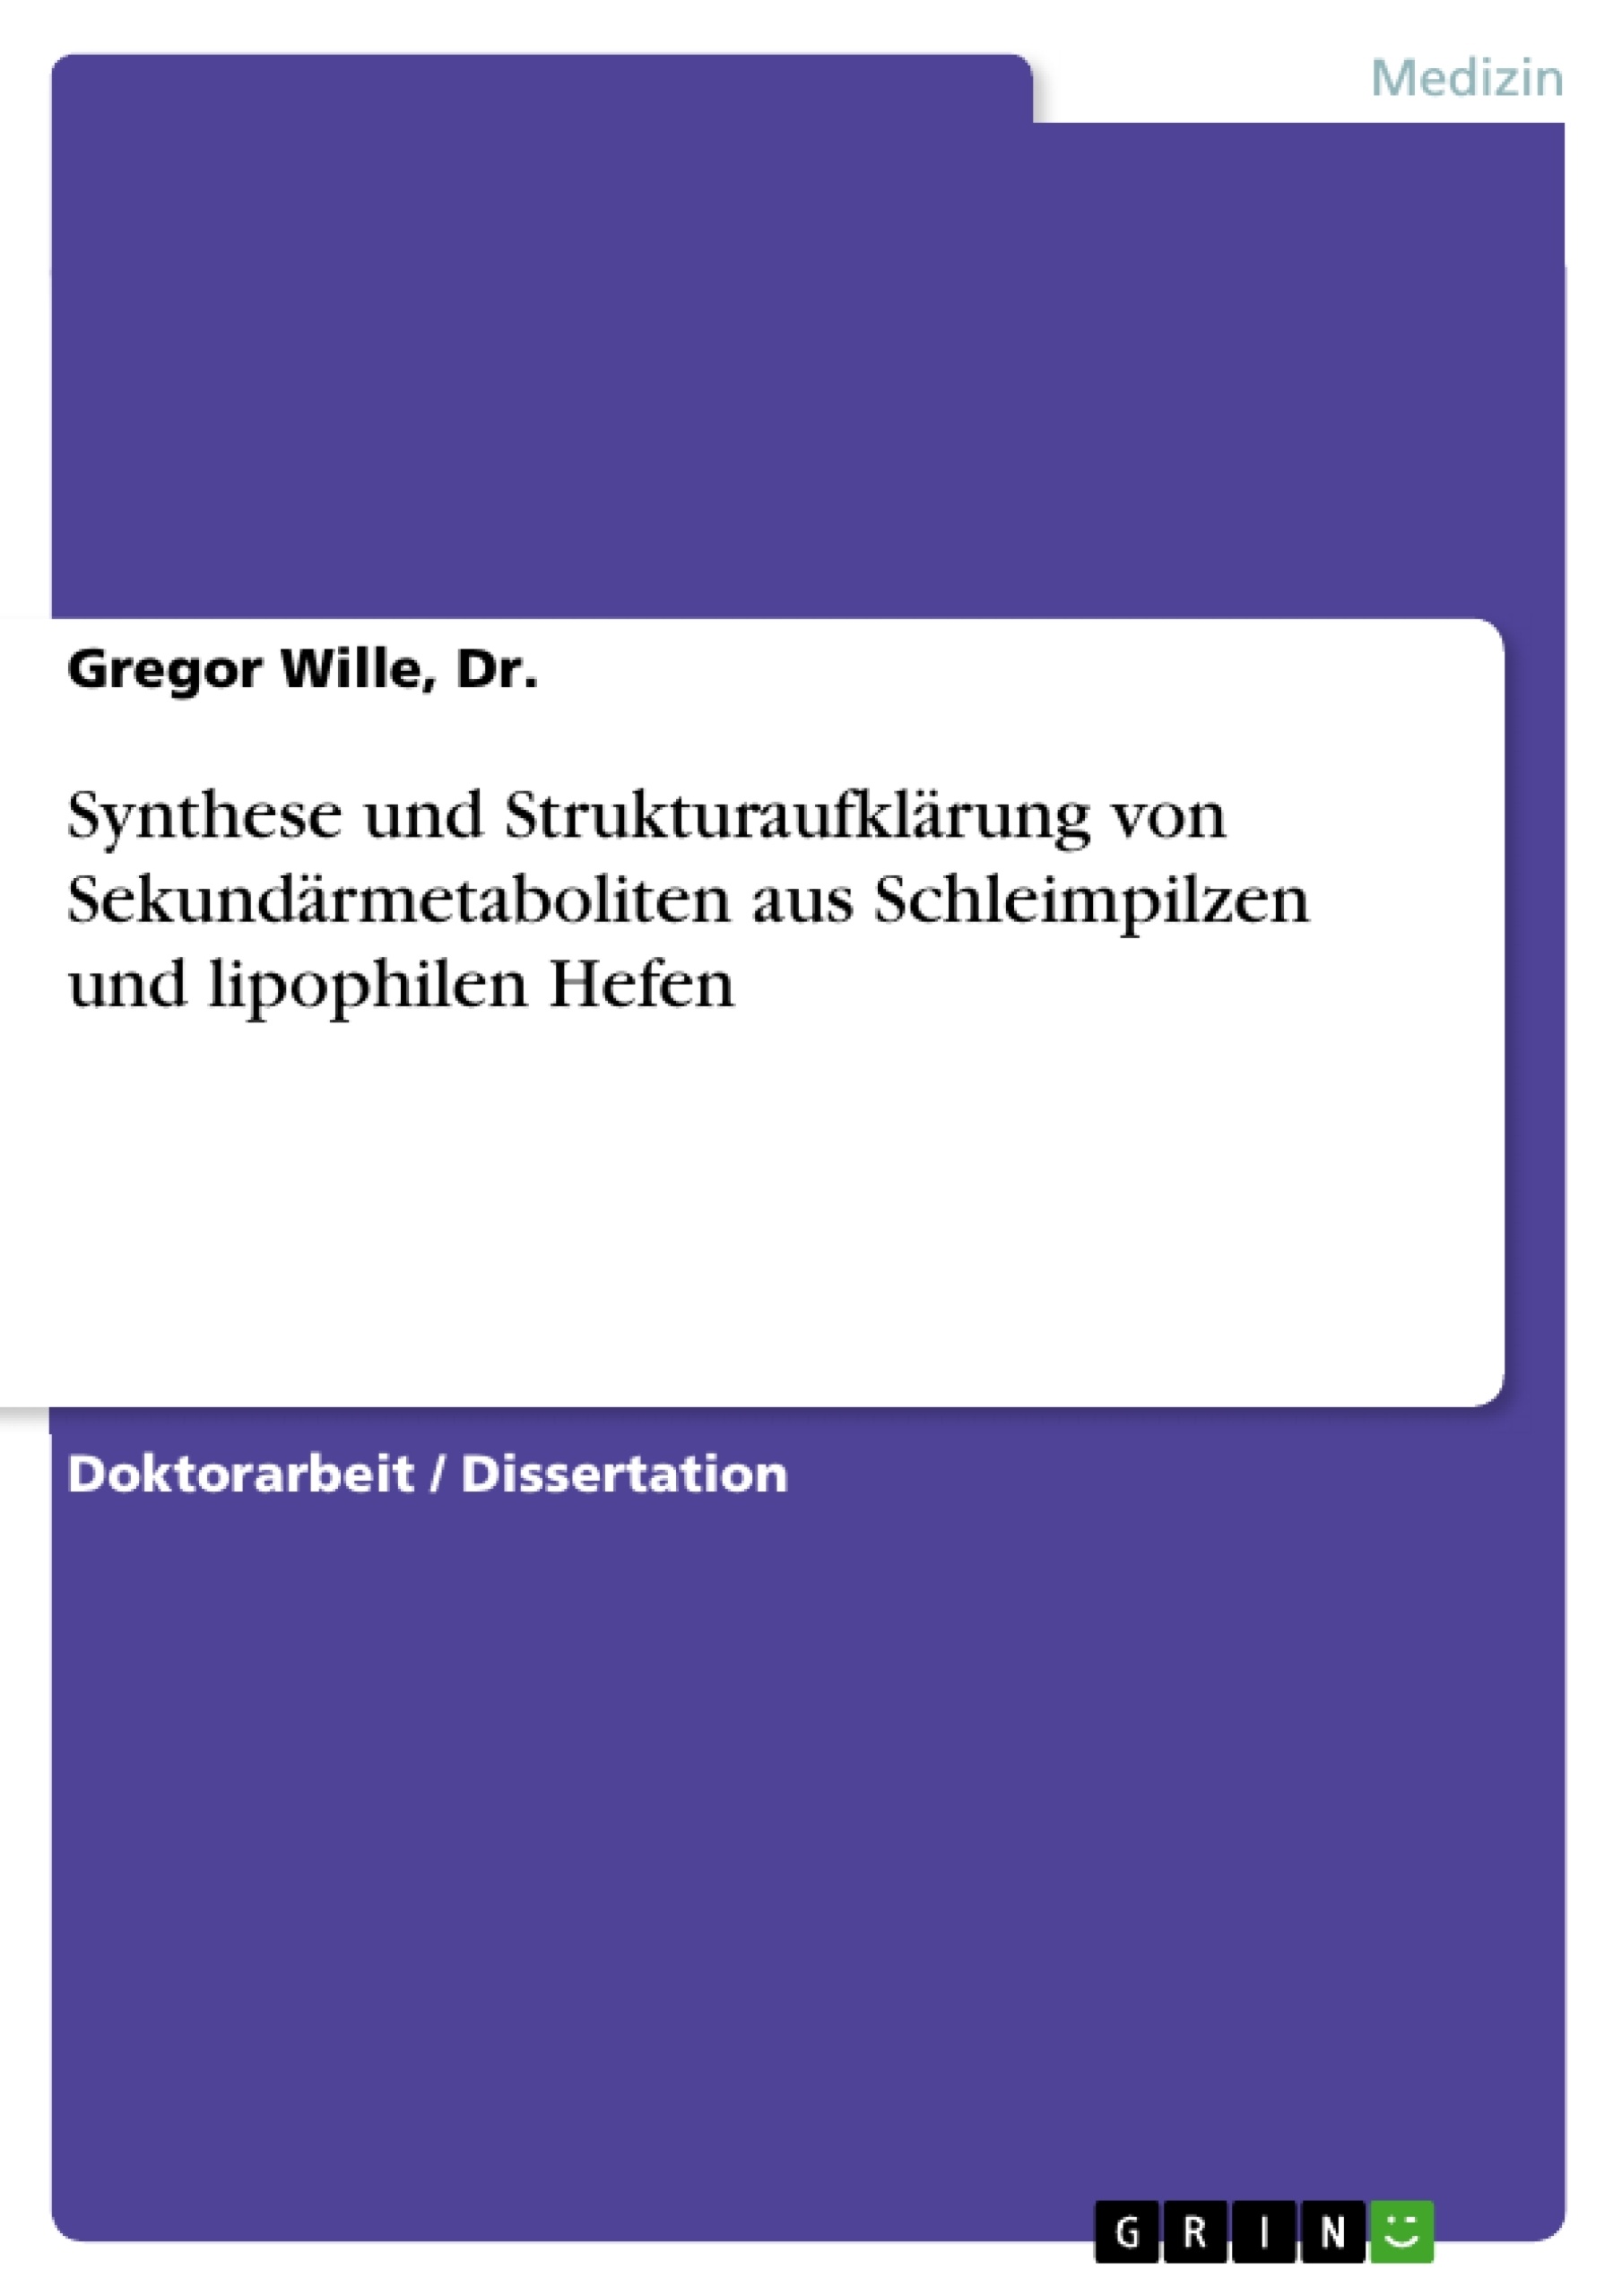 Title: Synthese und Strukturaufklärung von Sekundärmetaboliten aus Schleimpilzen und lipophilen Hefen